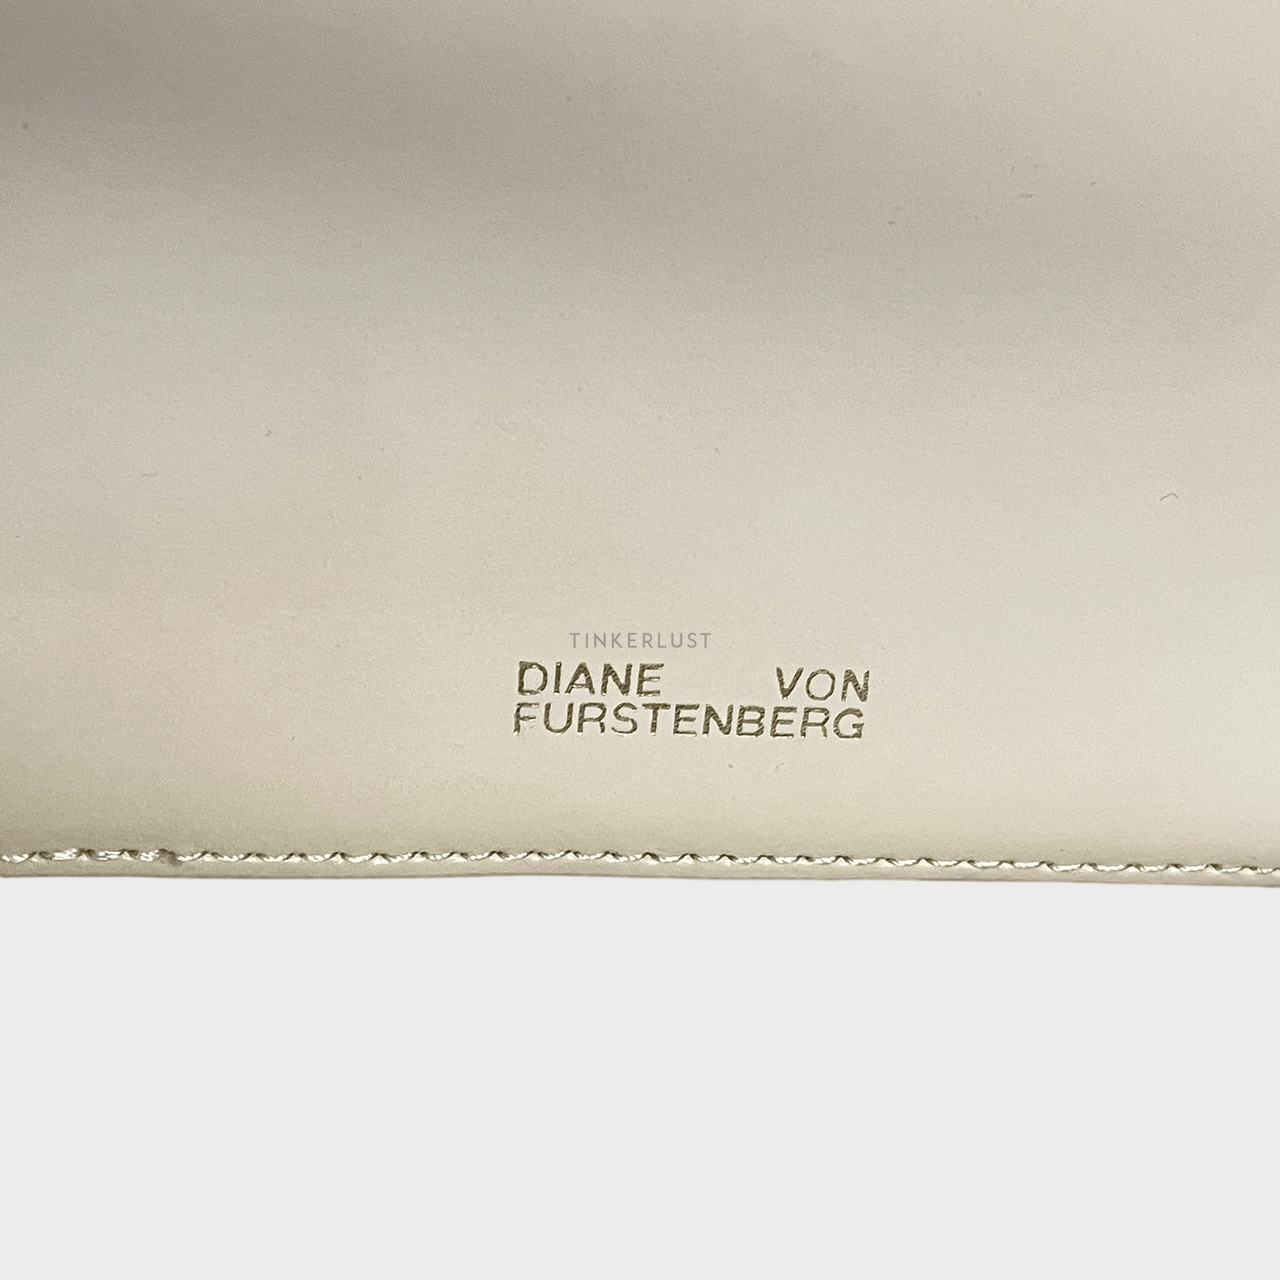 Diane Von Furstenberg Soiree Cream Leather GHW Shoulder Bag